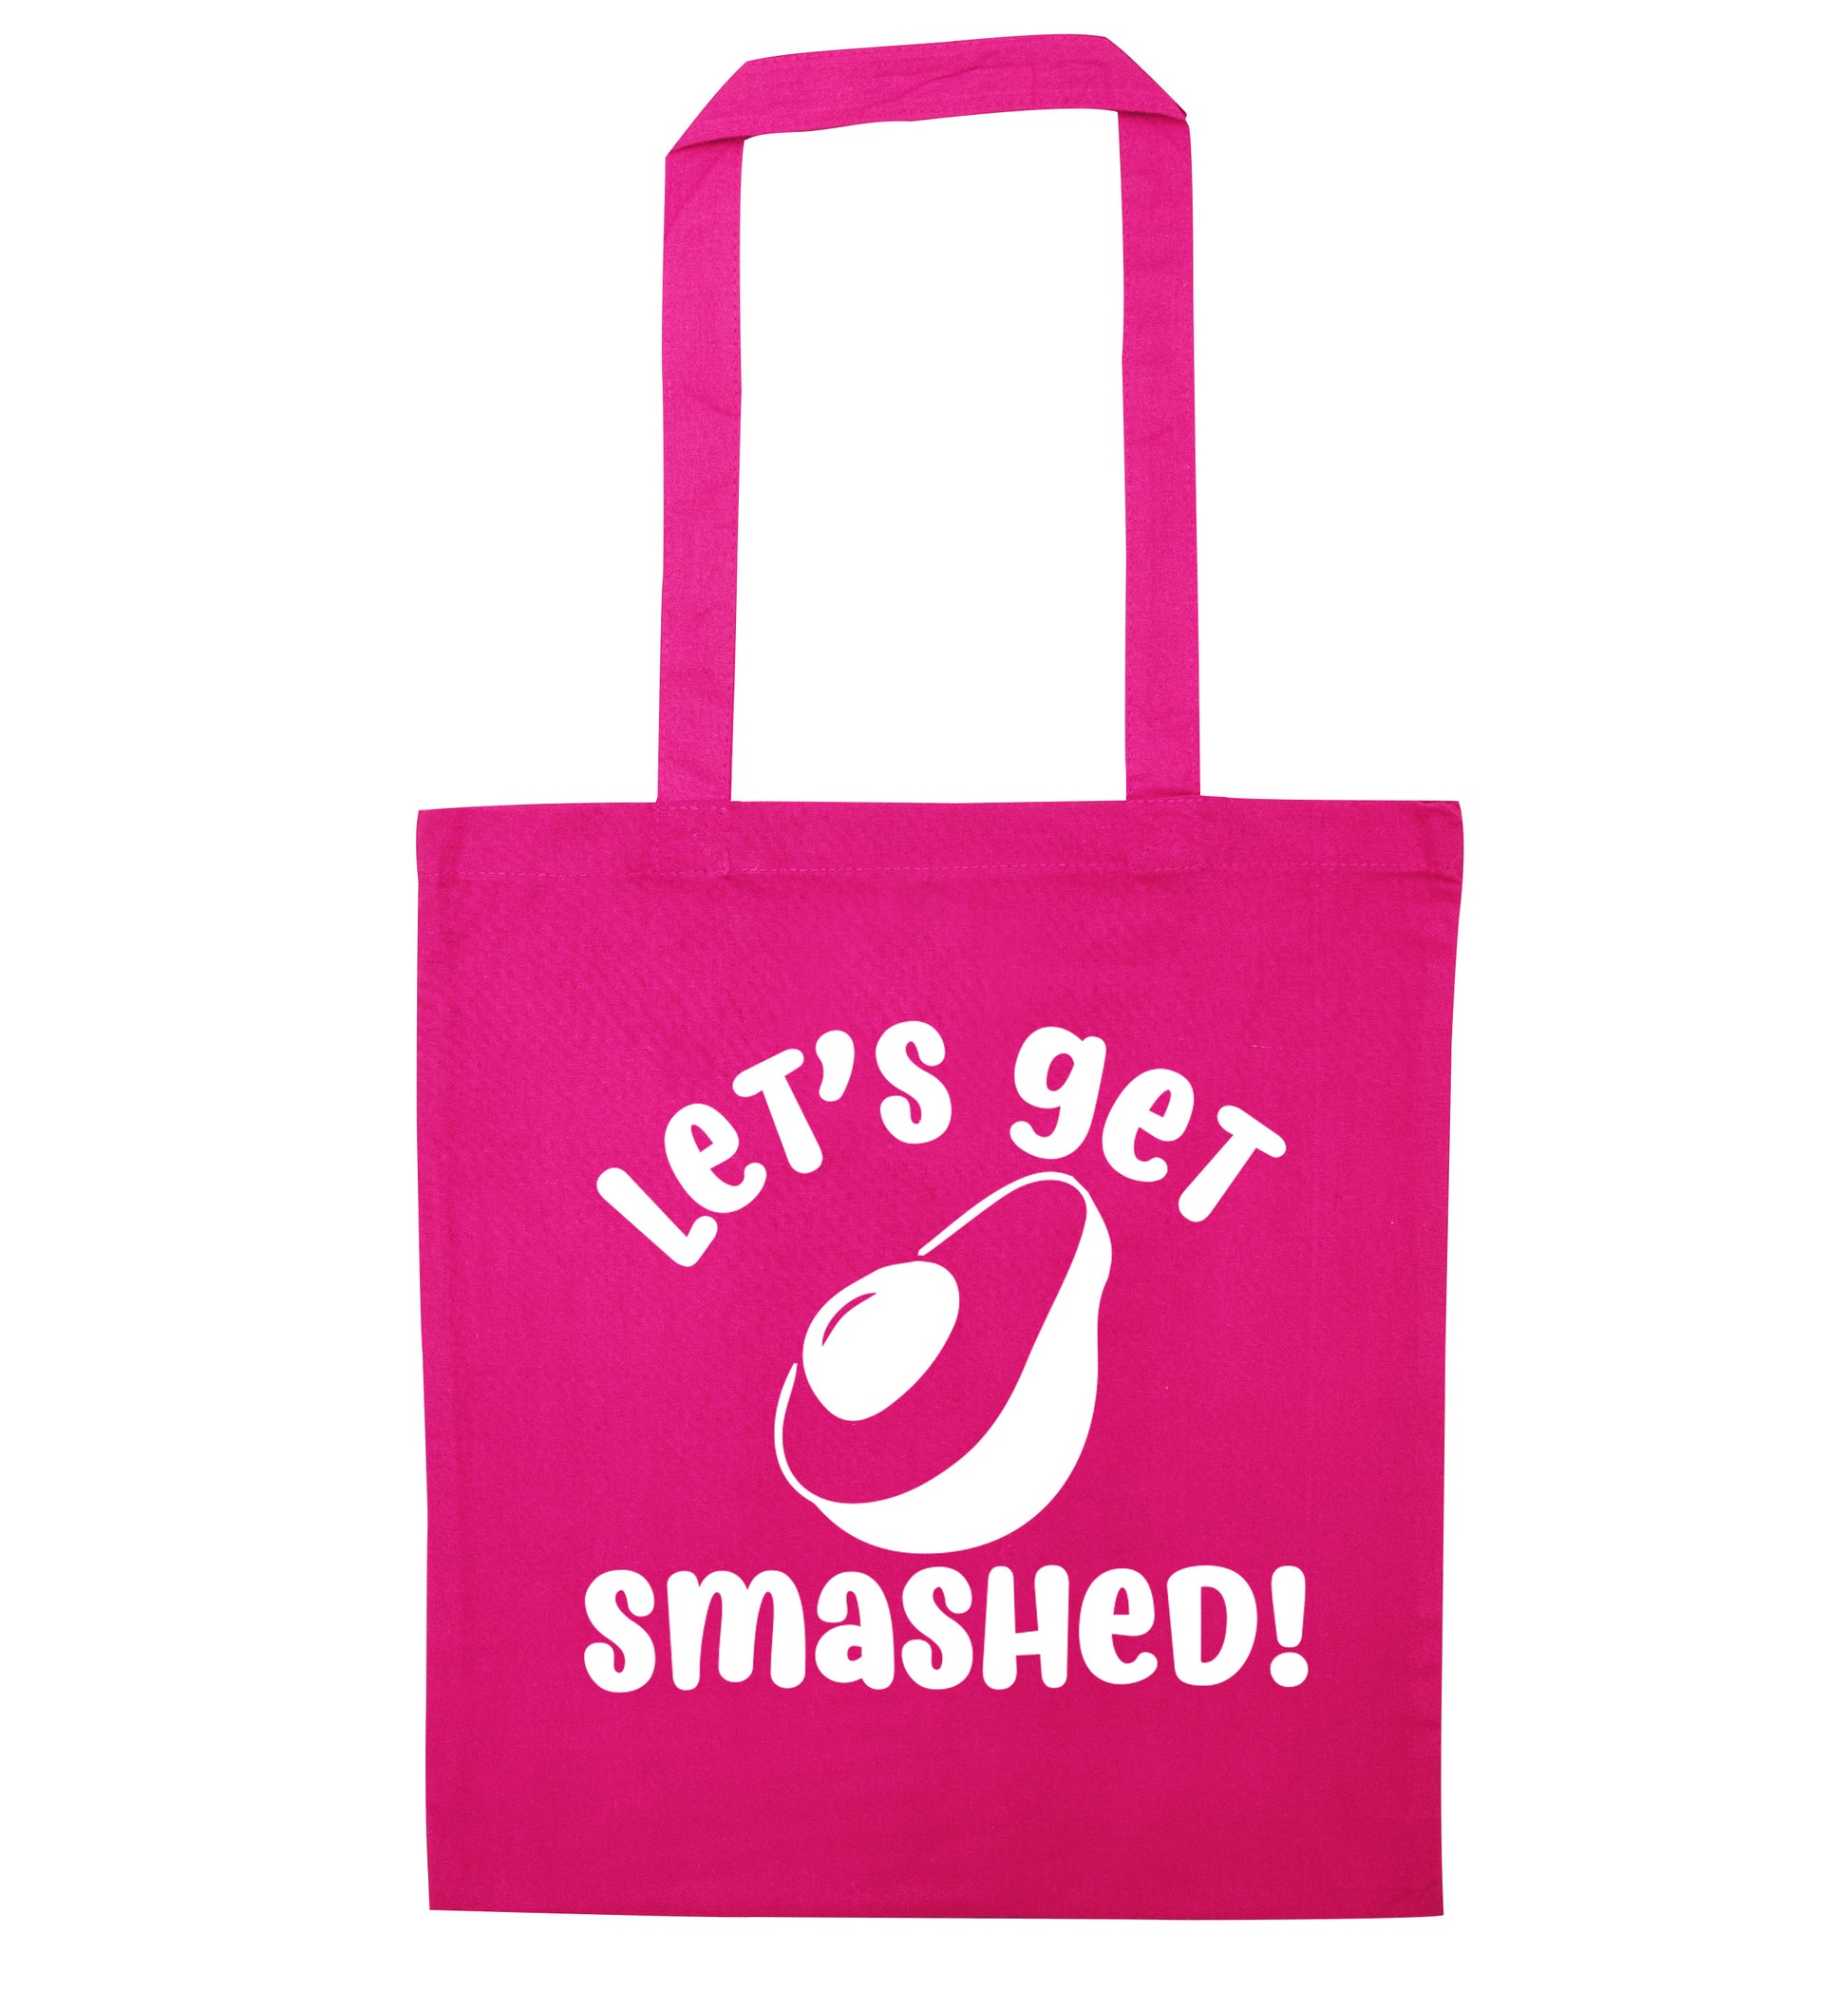 Let's get smashed pink tote bag